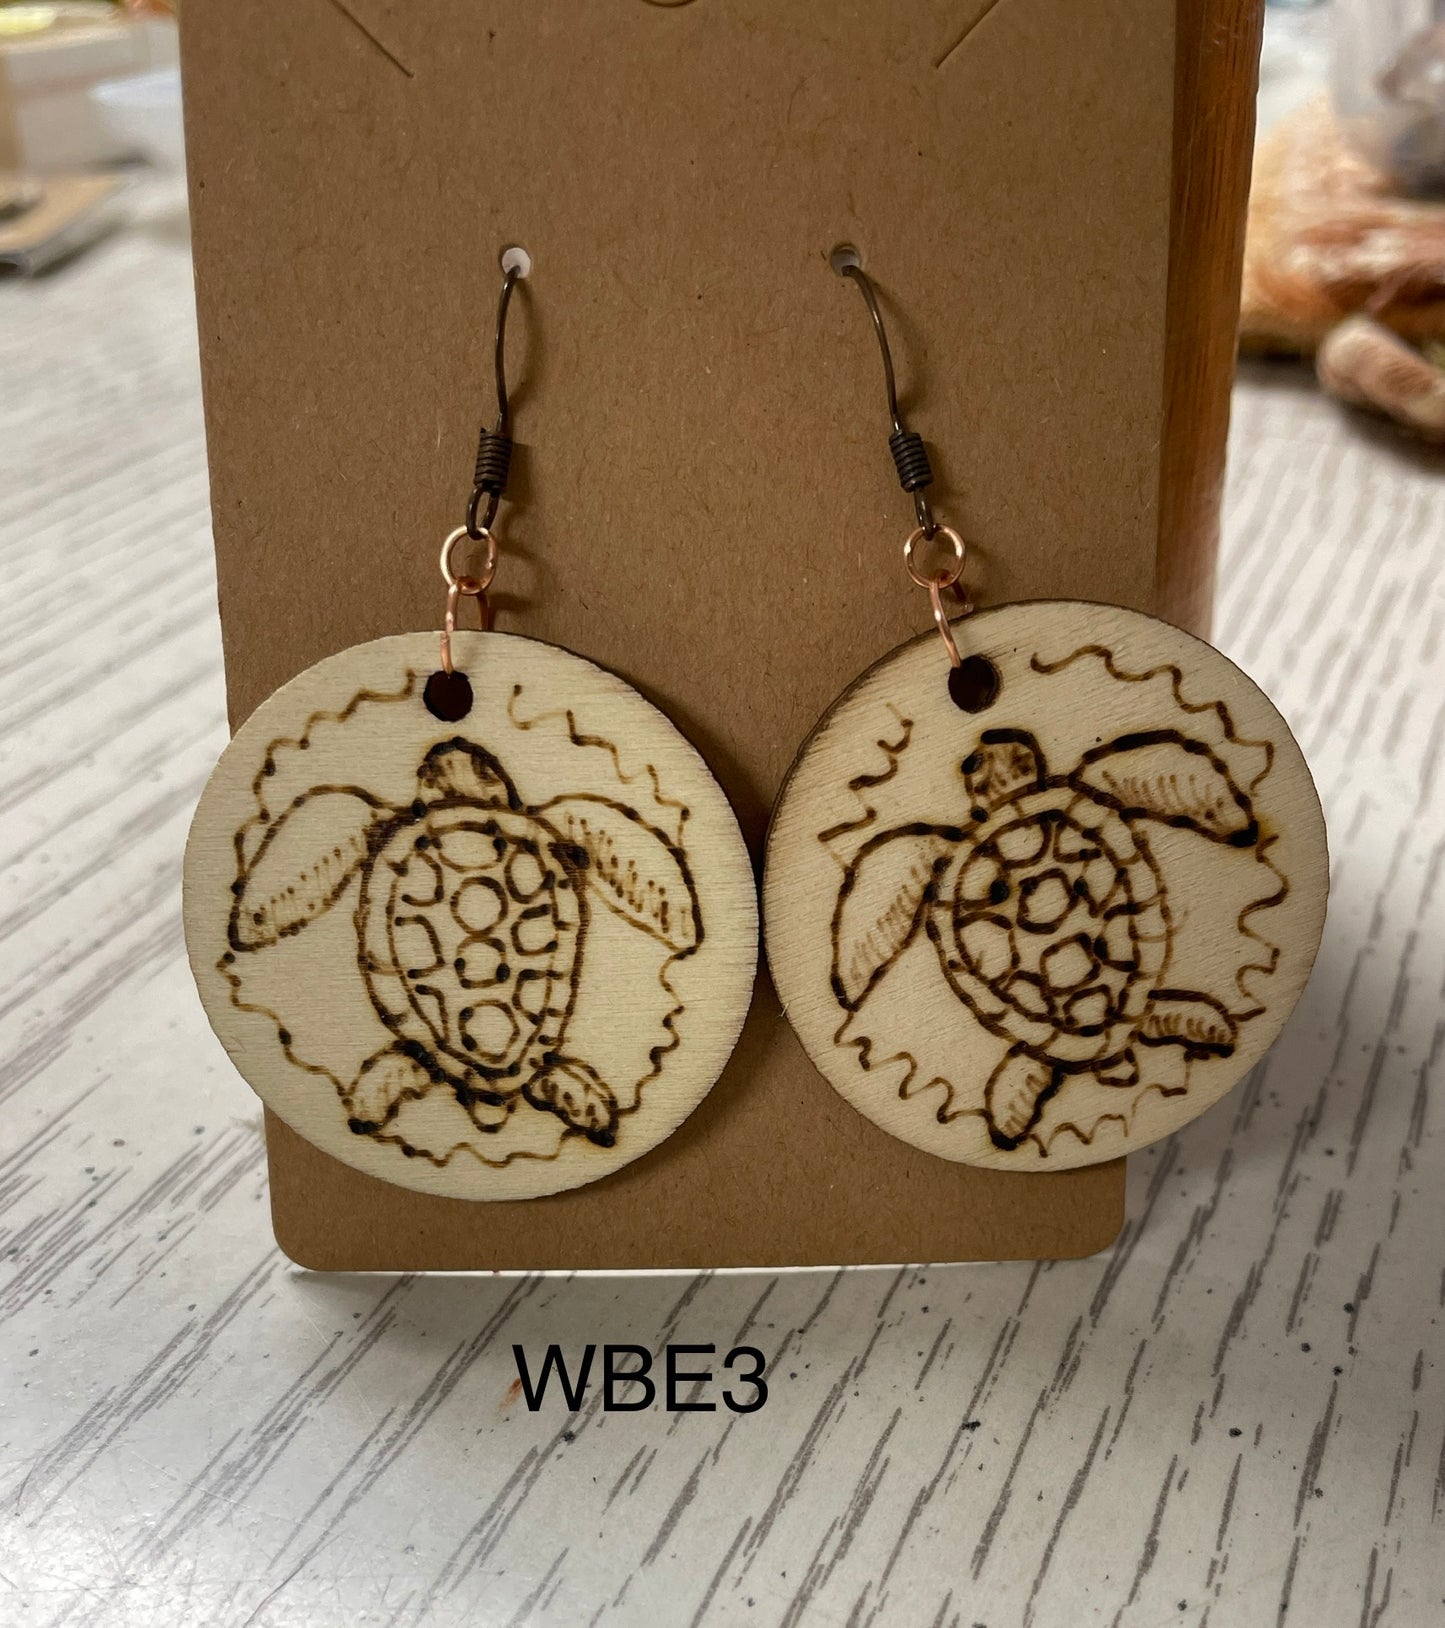 Wood burned sea turtles earrings WBE3